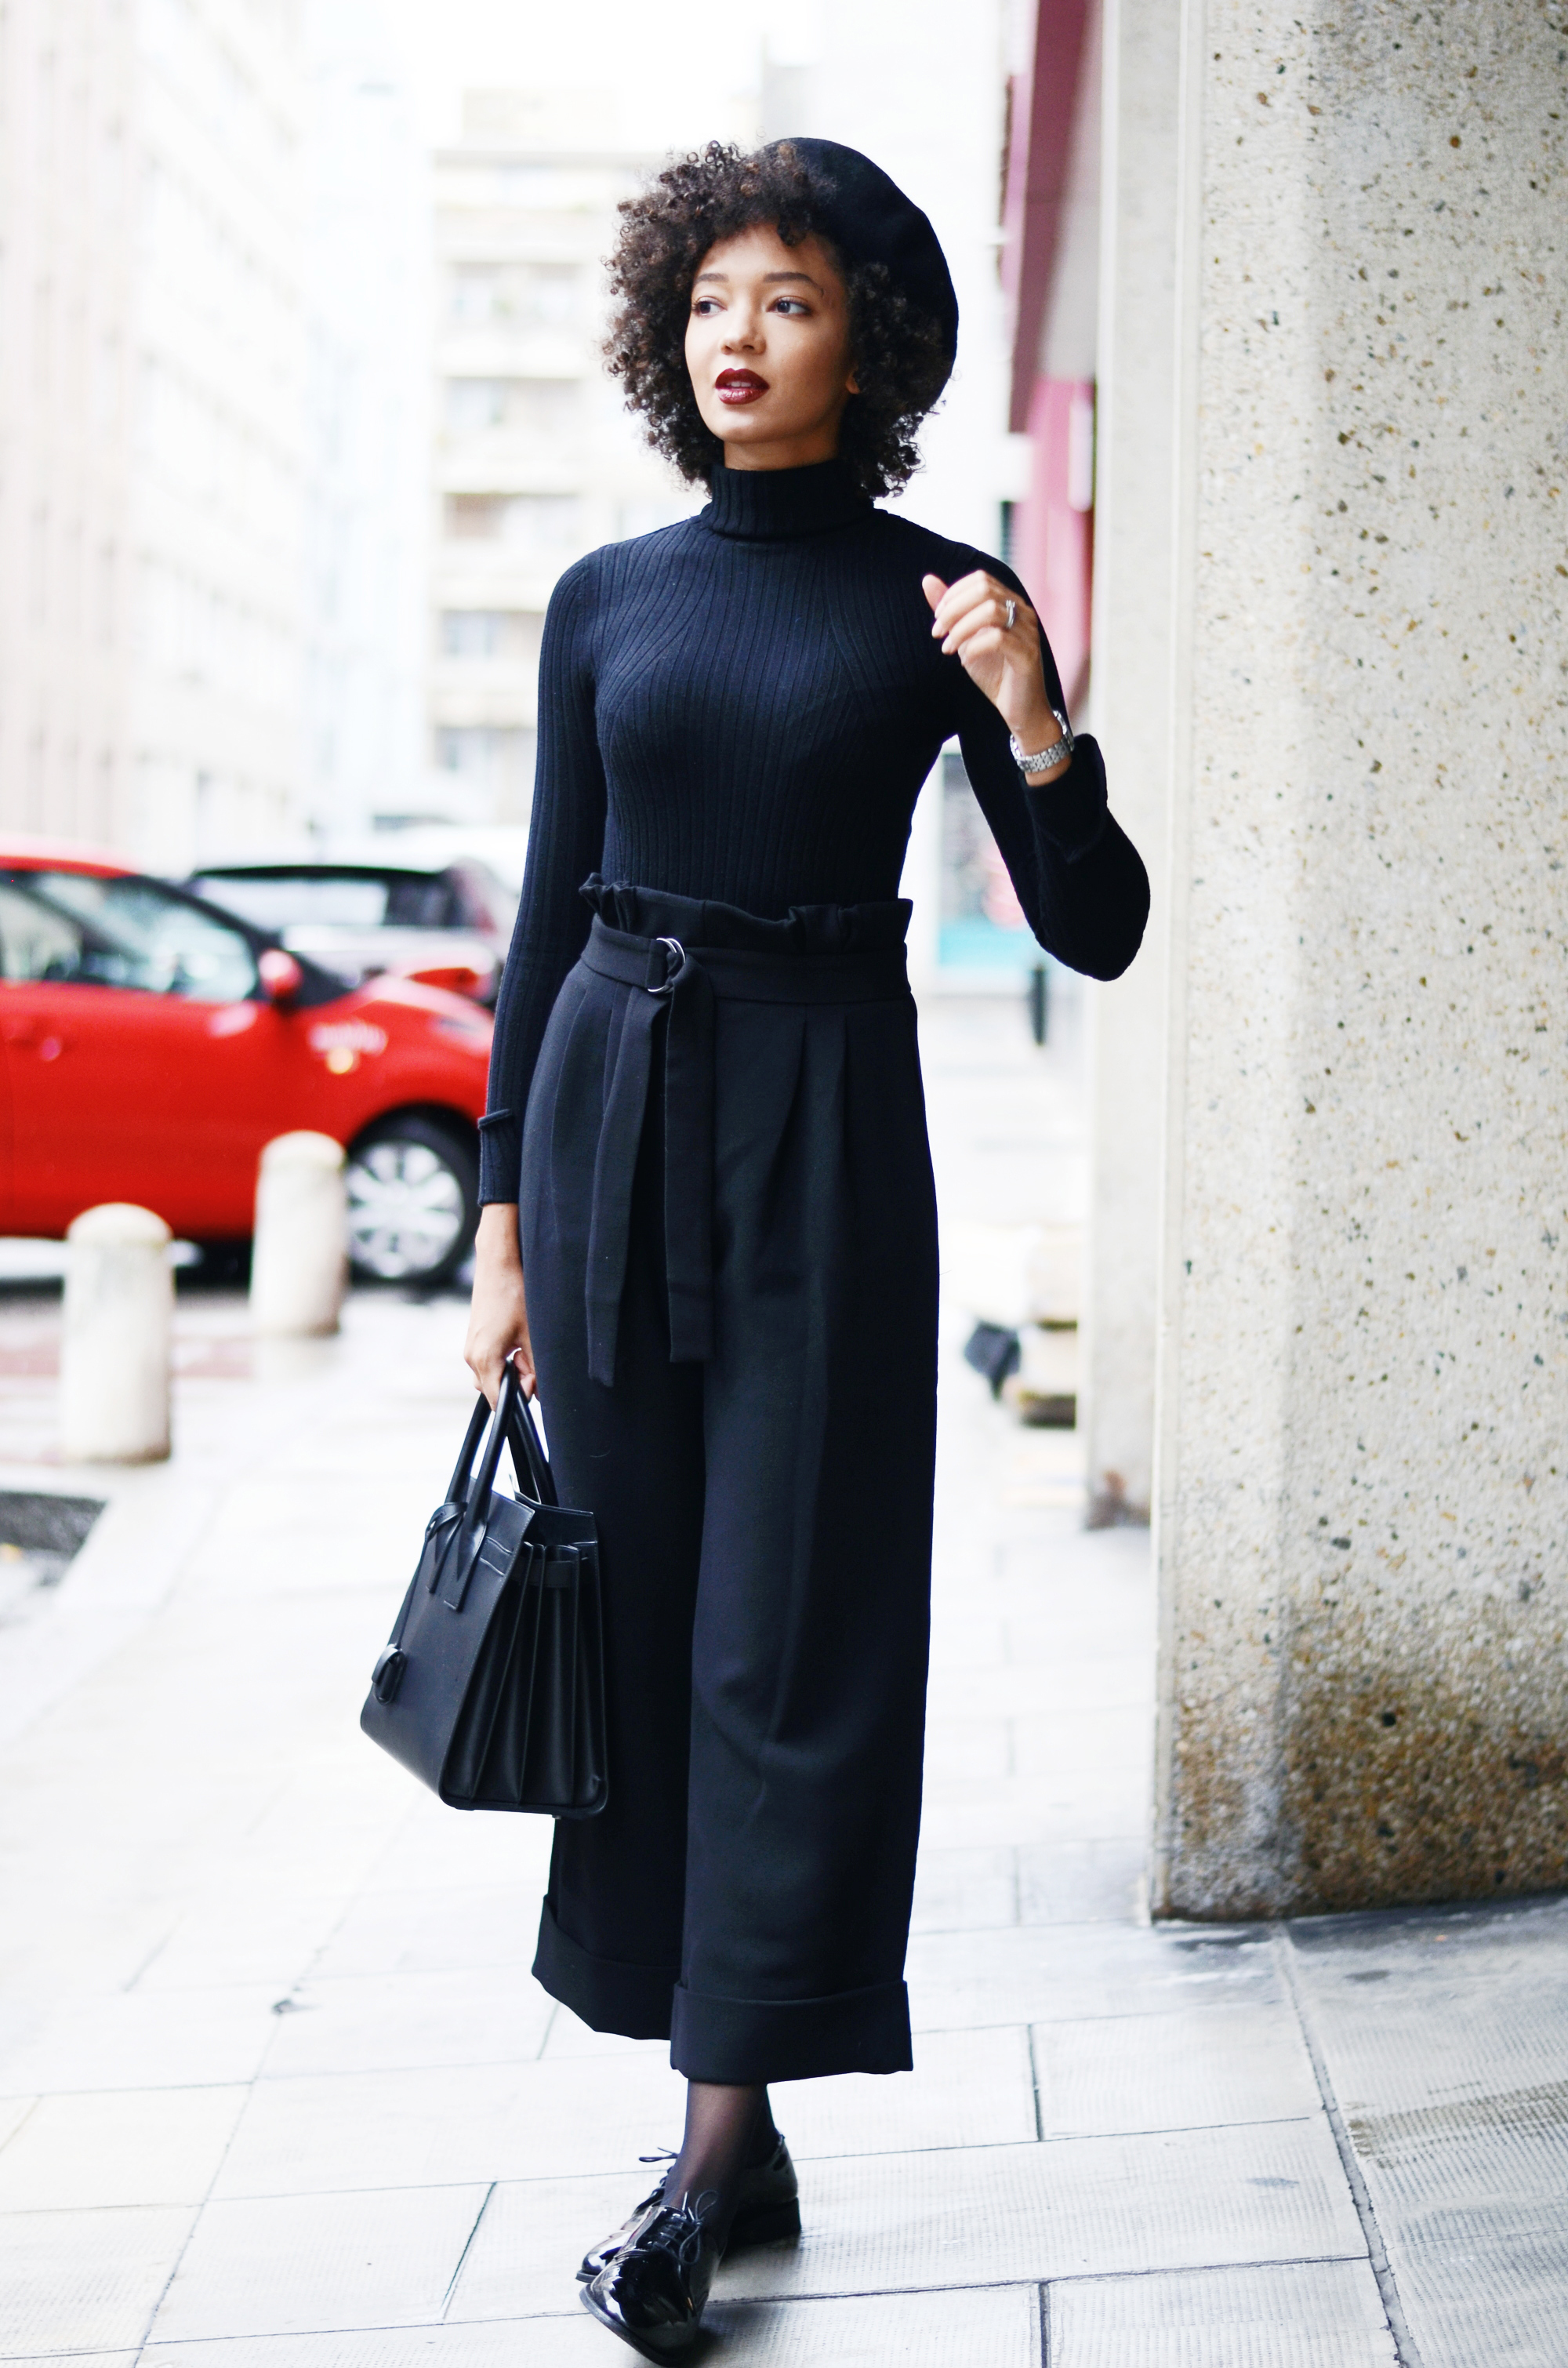 mercredie-blog-mode-geneve-suisse-fashion-blogger-all-black-outfit-chic-saint-laurent-sac-de-jour-black-matte-derbies-vernies-shoepassion-102-afro-beret